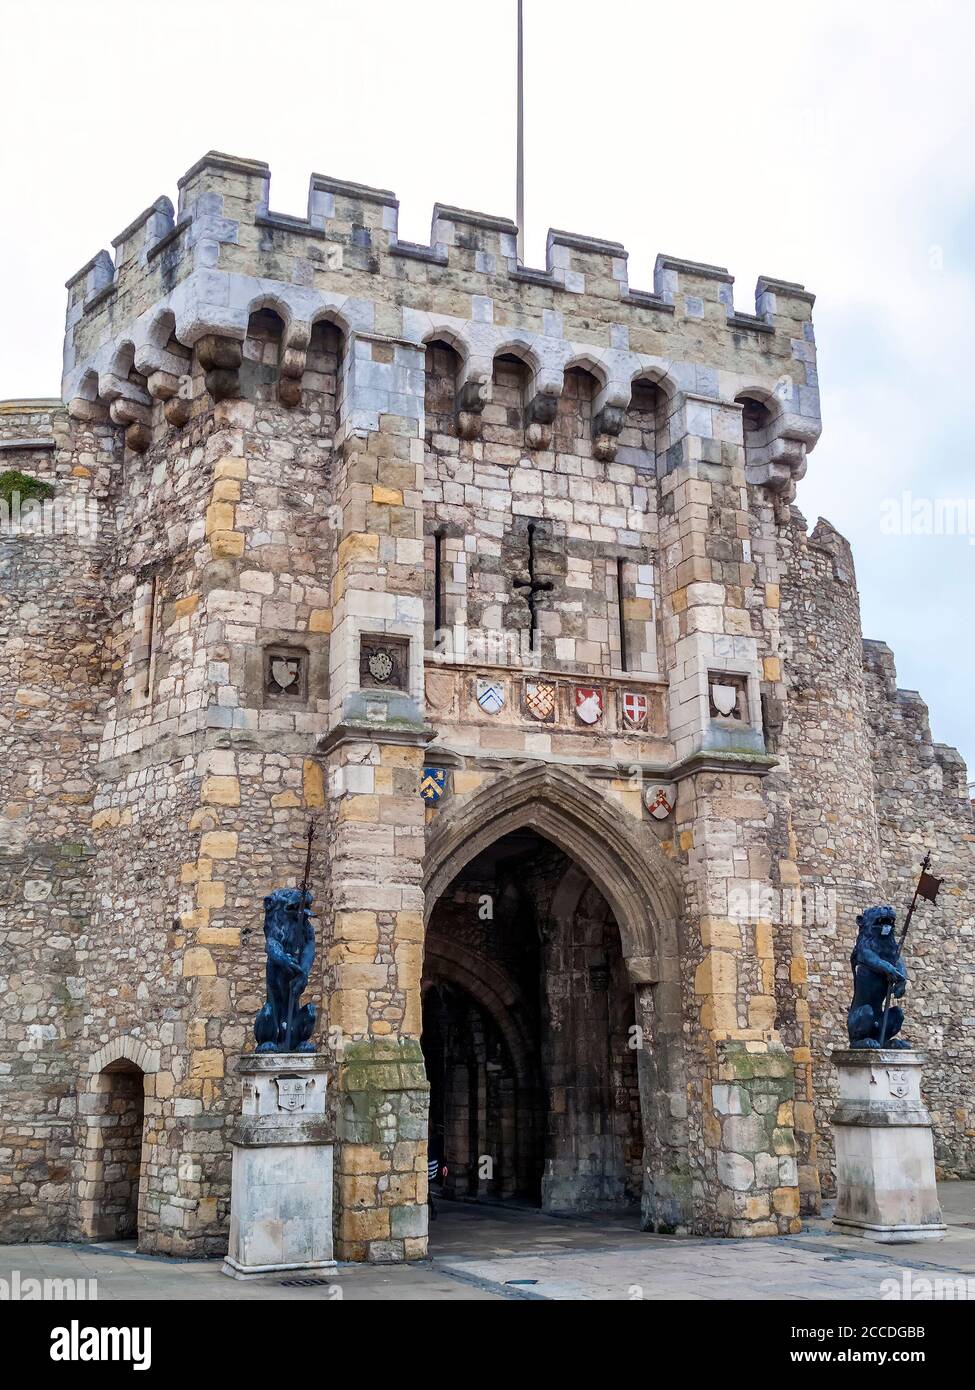 Southampton Castle England Großbritannien, das ein normannisches 11. Jahrhundert ist fort Ruin, ein beliebtes Reiseziel Touristenattraktion Wahrzeichen der Stadt c Stockfoto